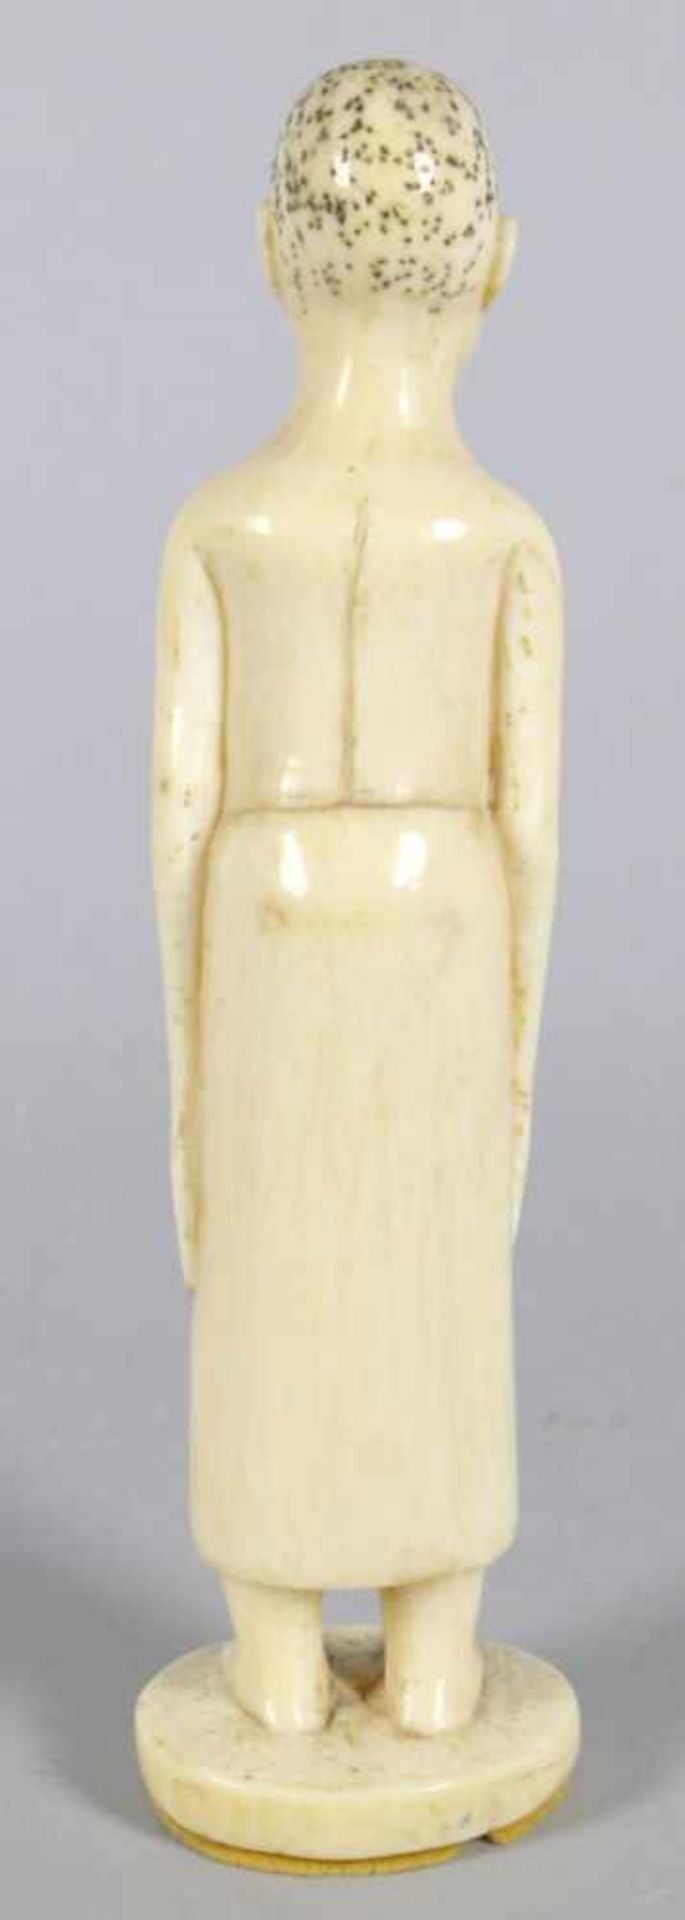 Elfenbein-Figur, Mangbetu, Kongo, um 1910, auf Rundplinthe plastische, stehendeDarstellung eines - Bild 2 aus 2